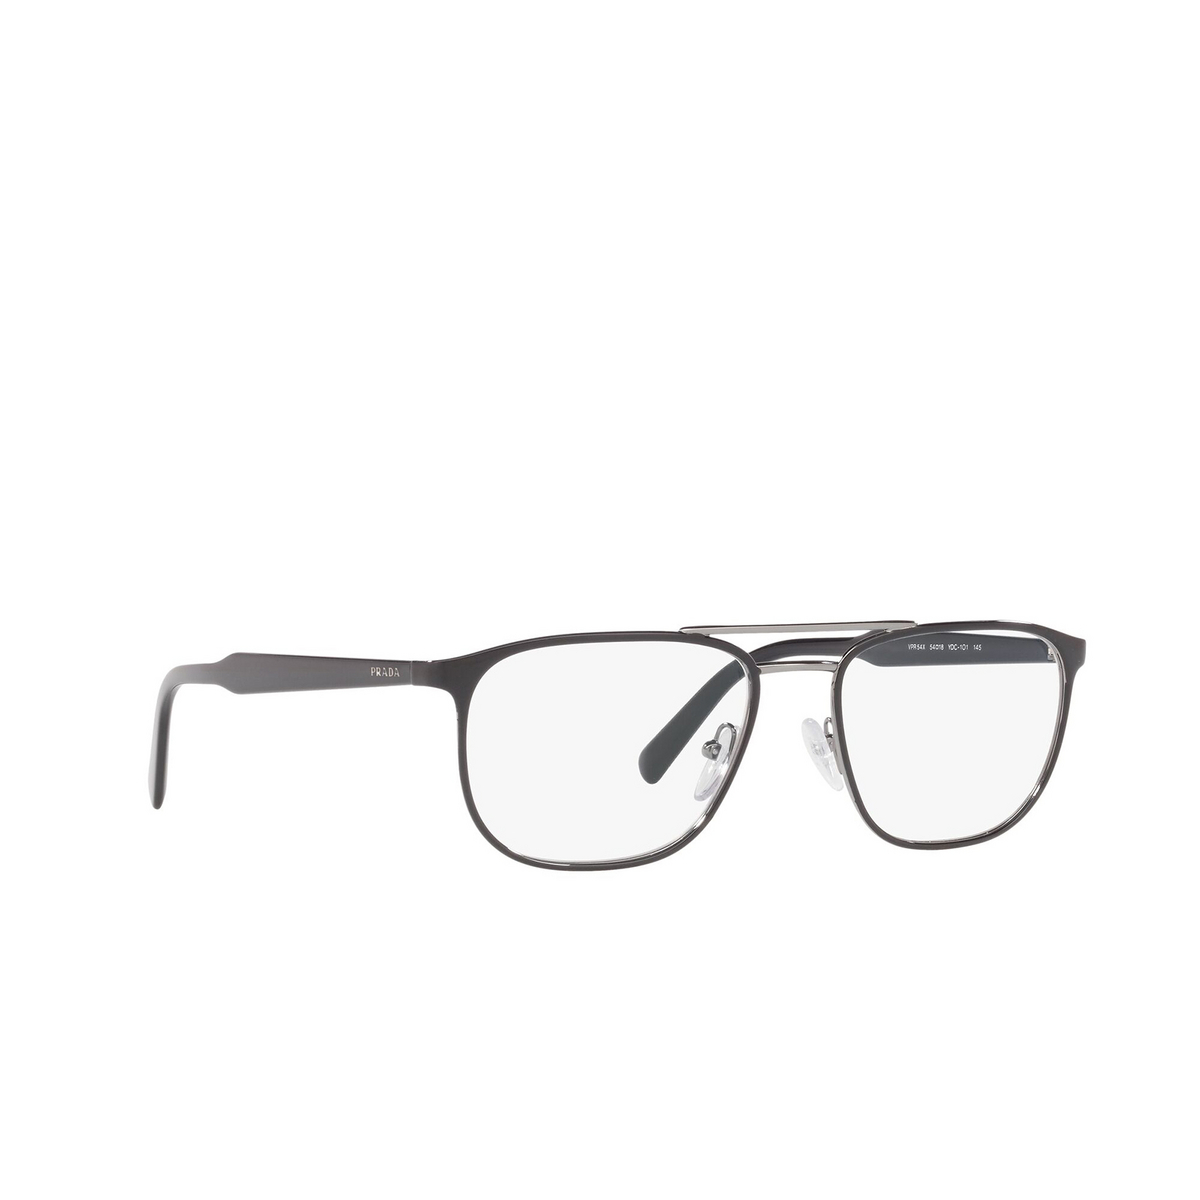 Prada PR 54XV Eyeglasses YDC1O1 Top Black on Gunmetal - three-quarters view